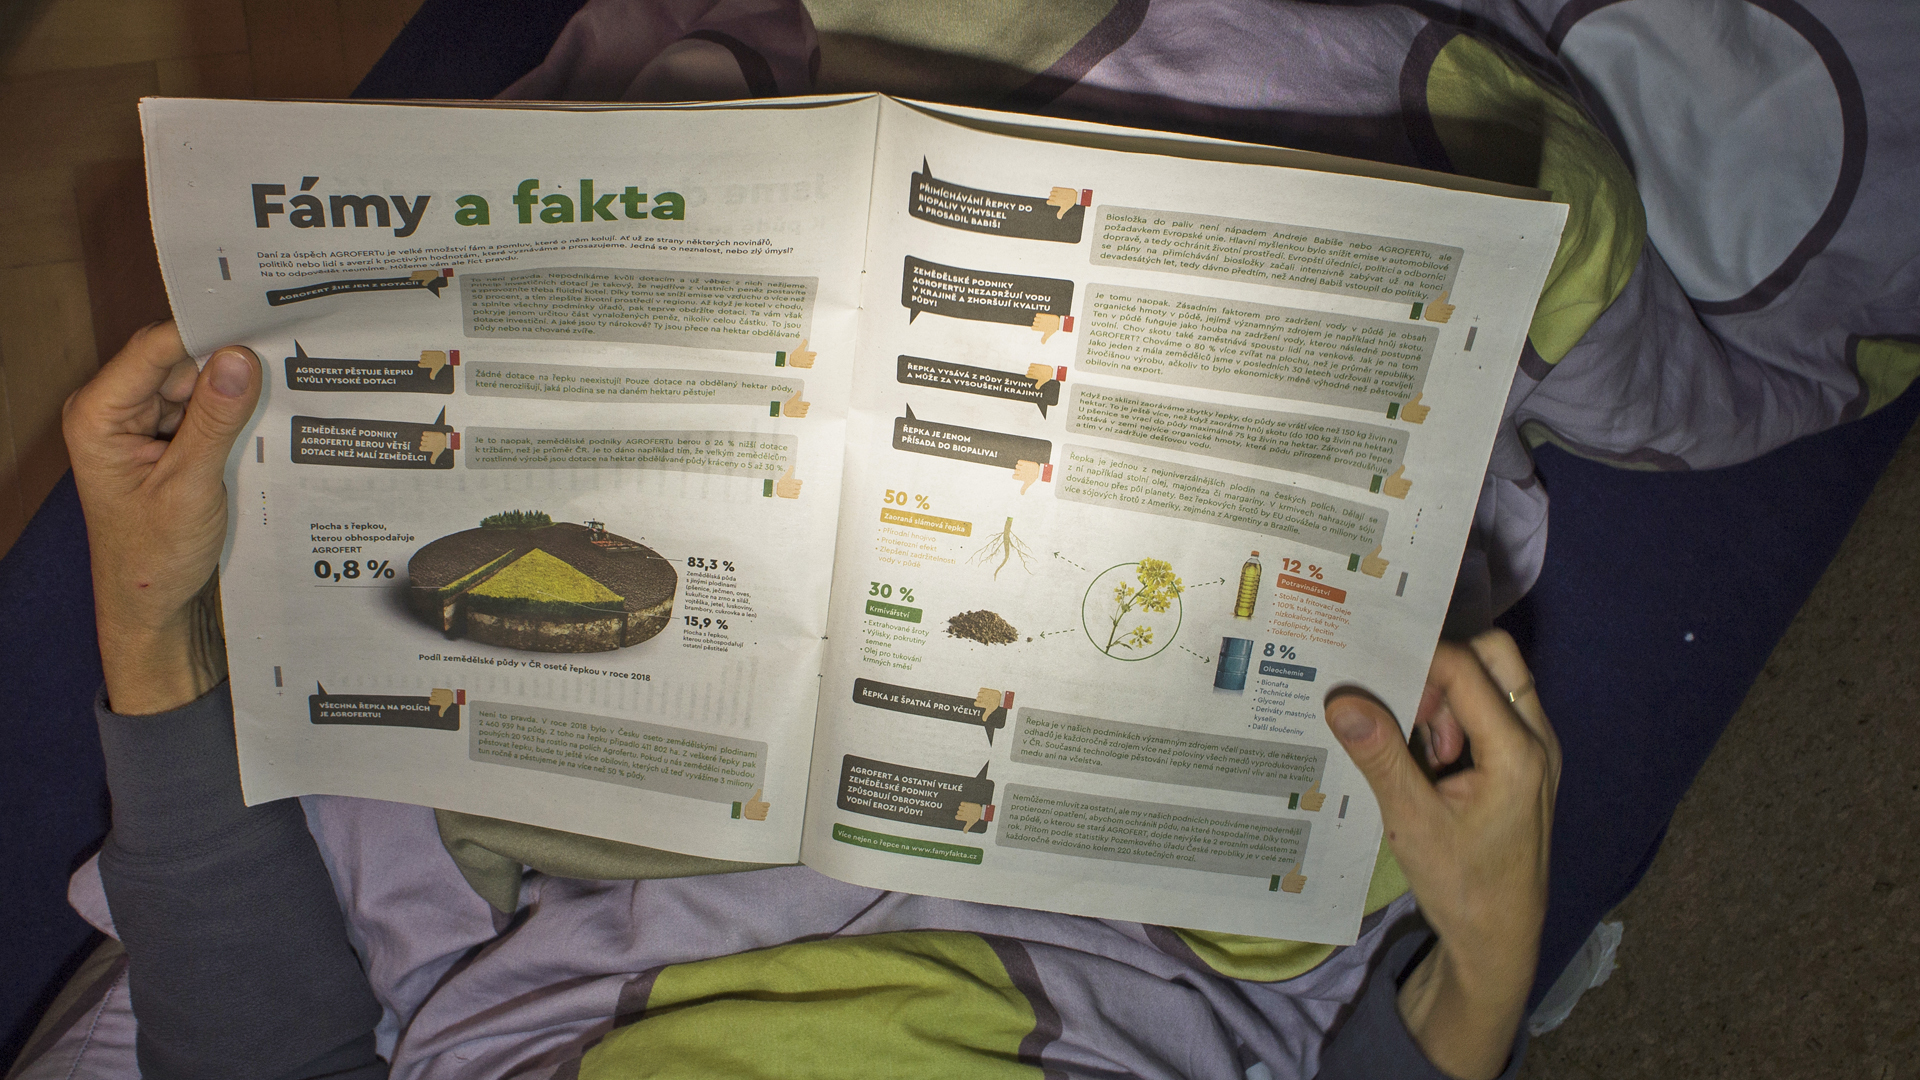 Hände blättern in einer PR-Broschüre, die der Zeitung "Mlada fronta Dnes" beiliegt. | picture alliance/dpa/CTK